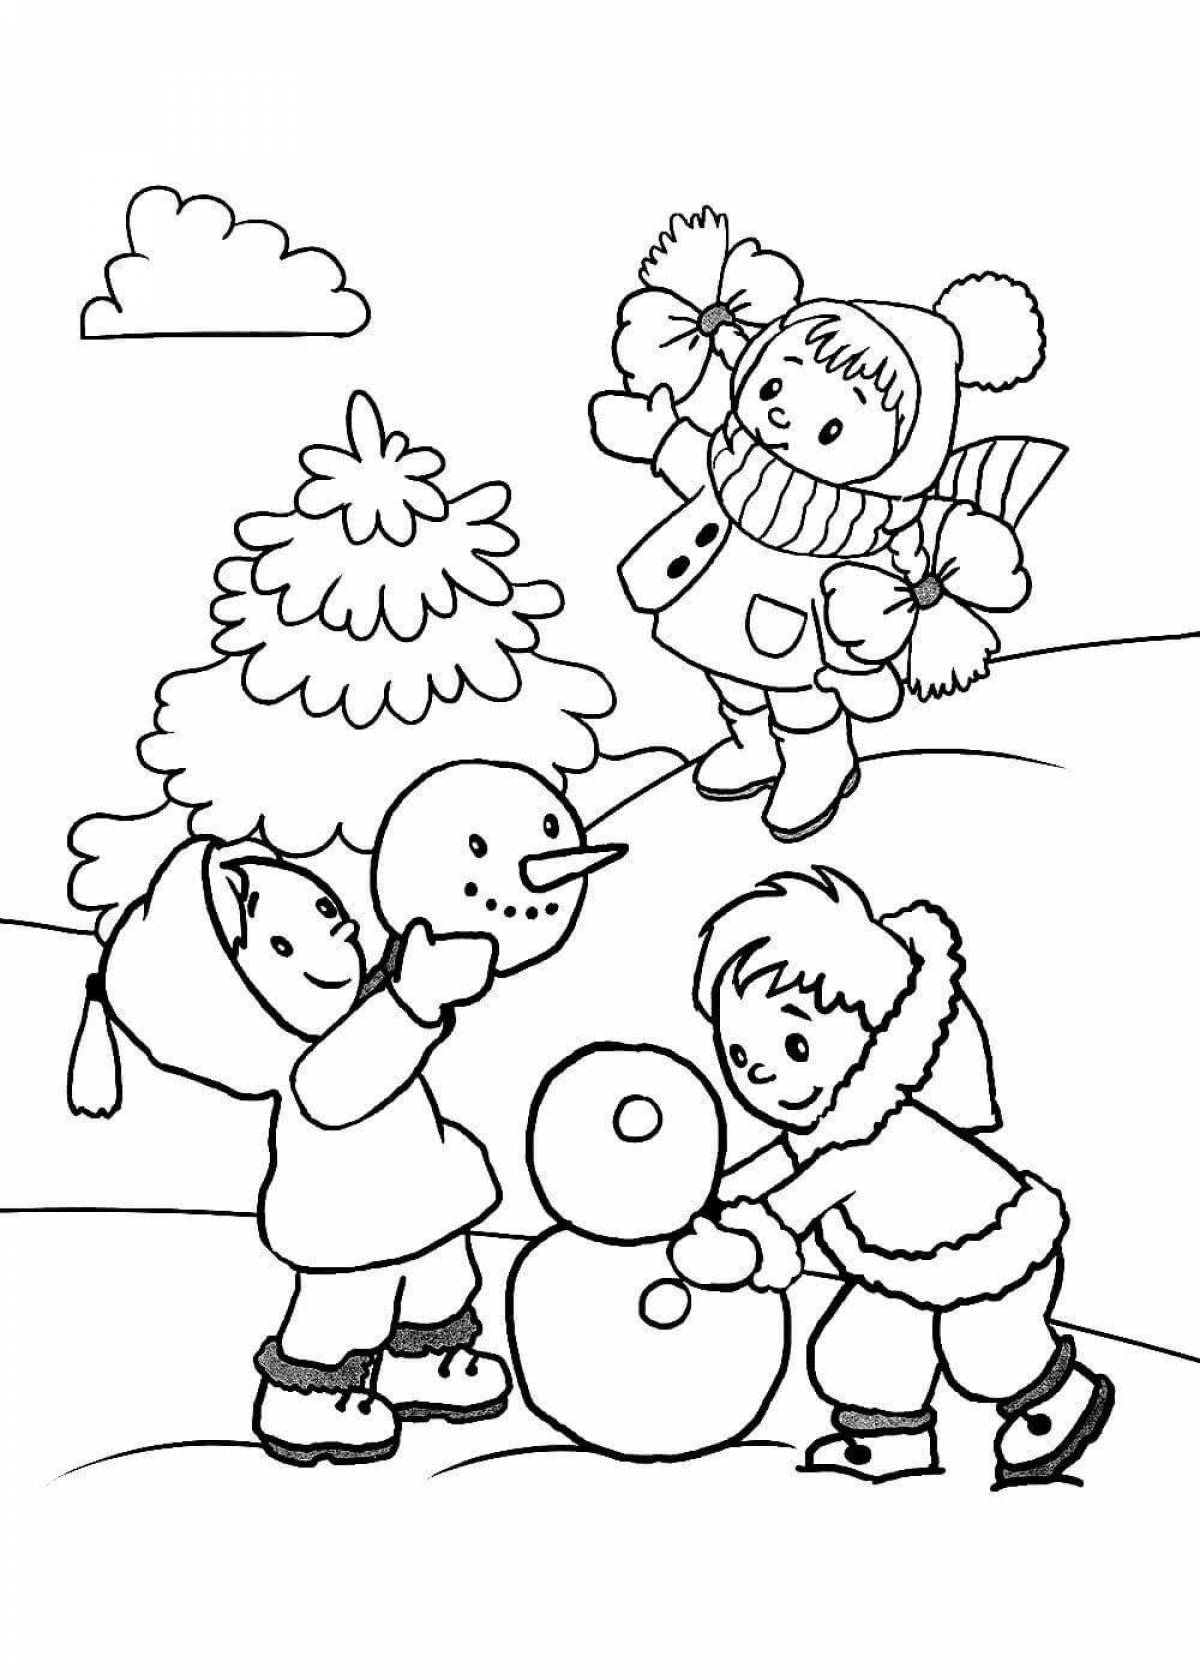 Красочная раскраска зимние развлечения для детей 6 лет